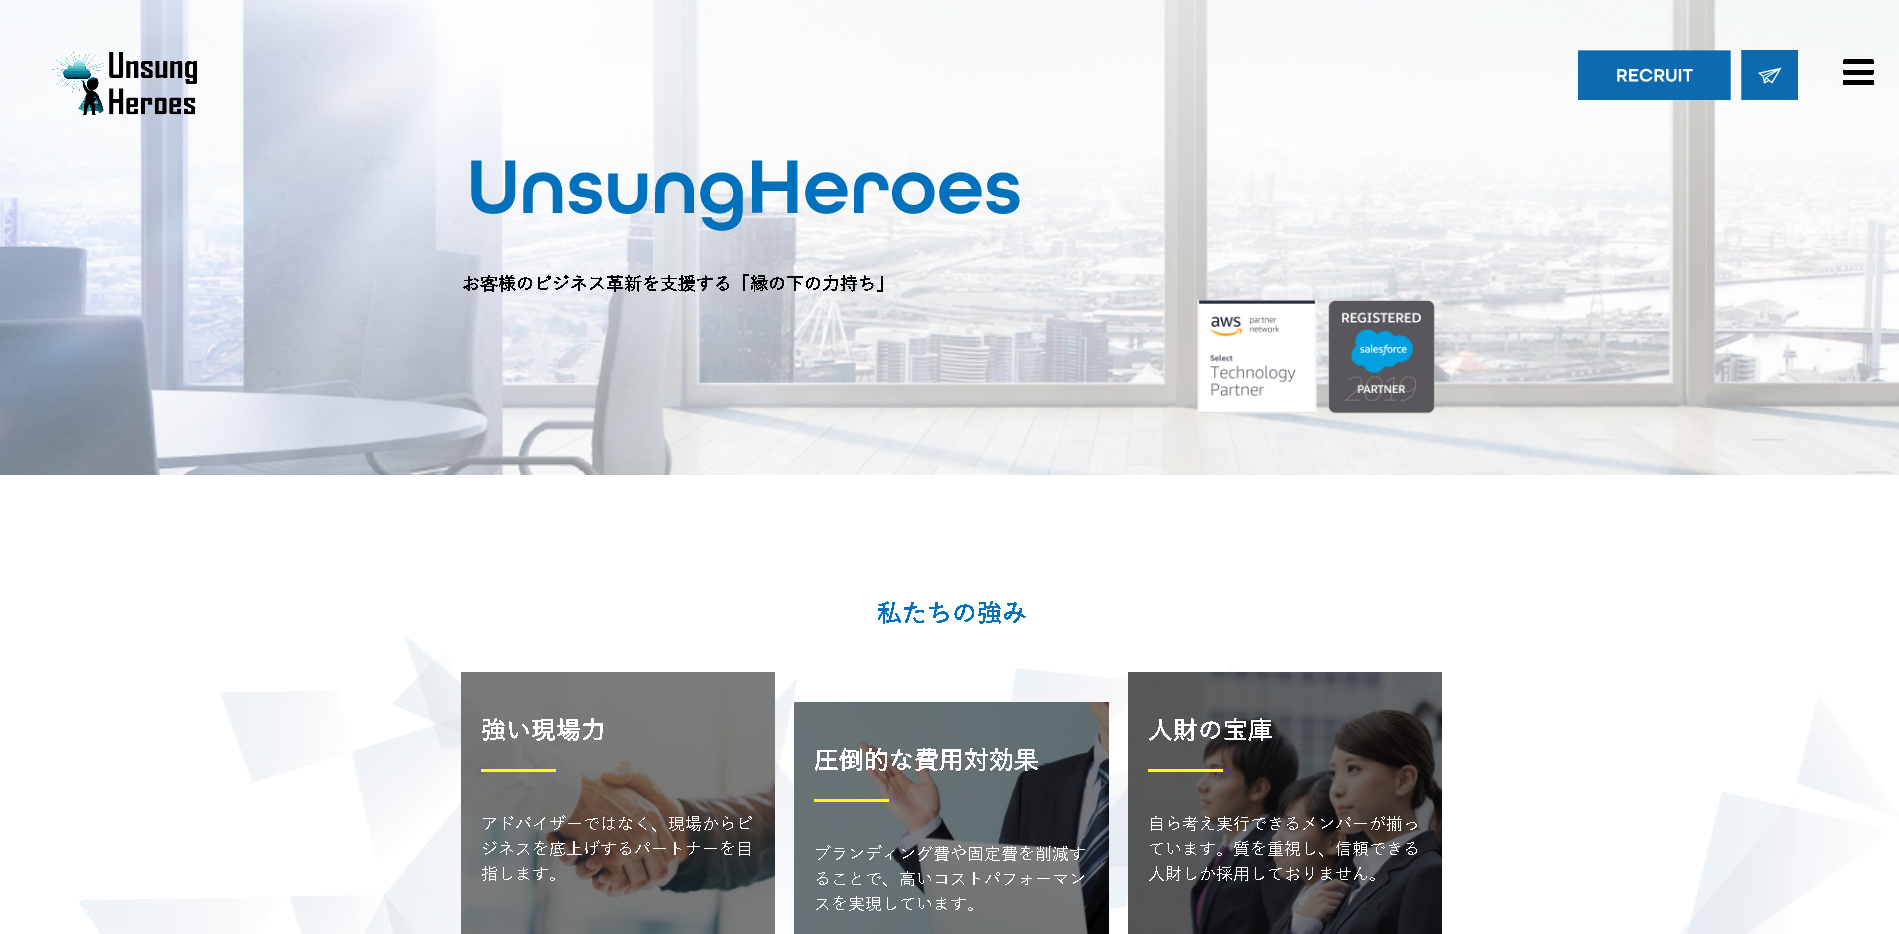 UnsungHeroes株式会社のUnsungHeroes株式会社サービス